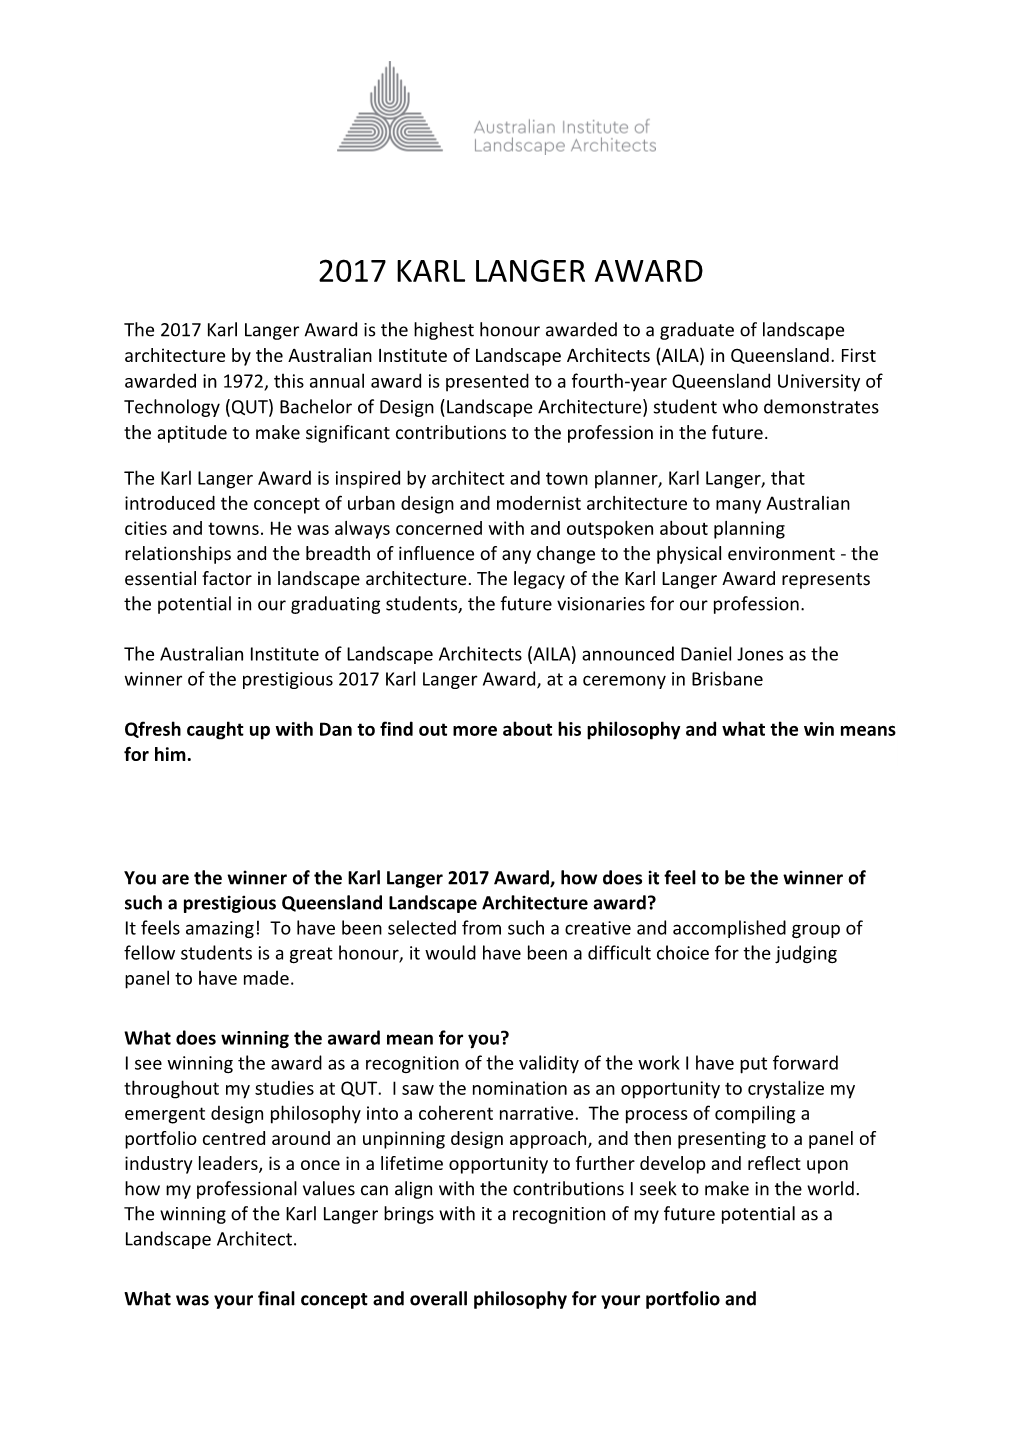 2017 Karl Langer Award